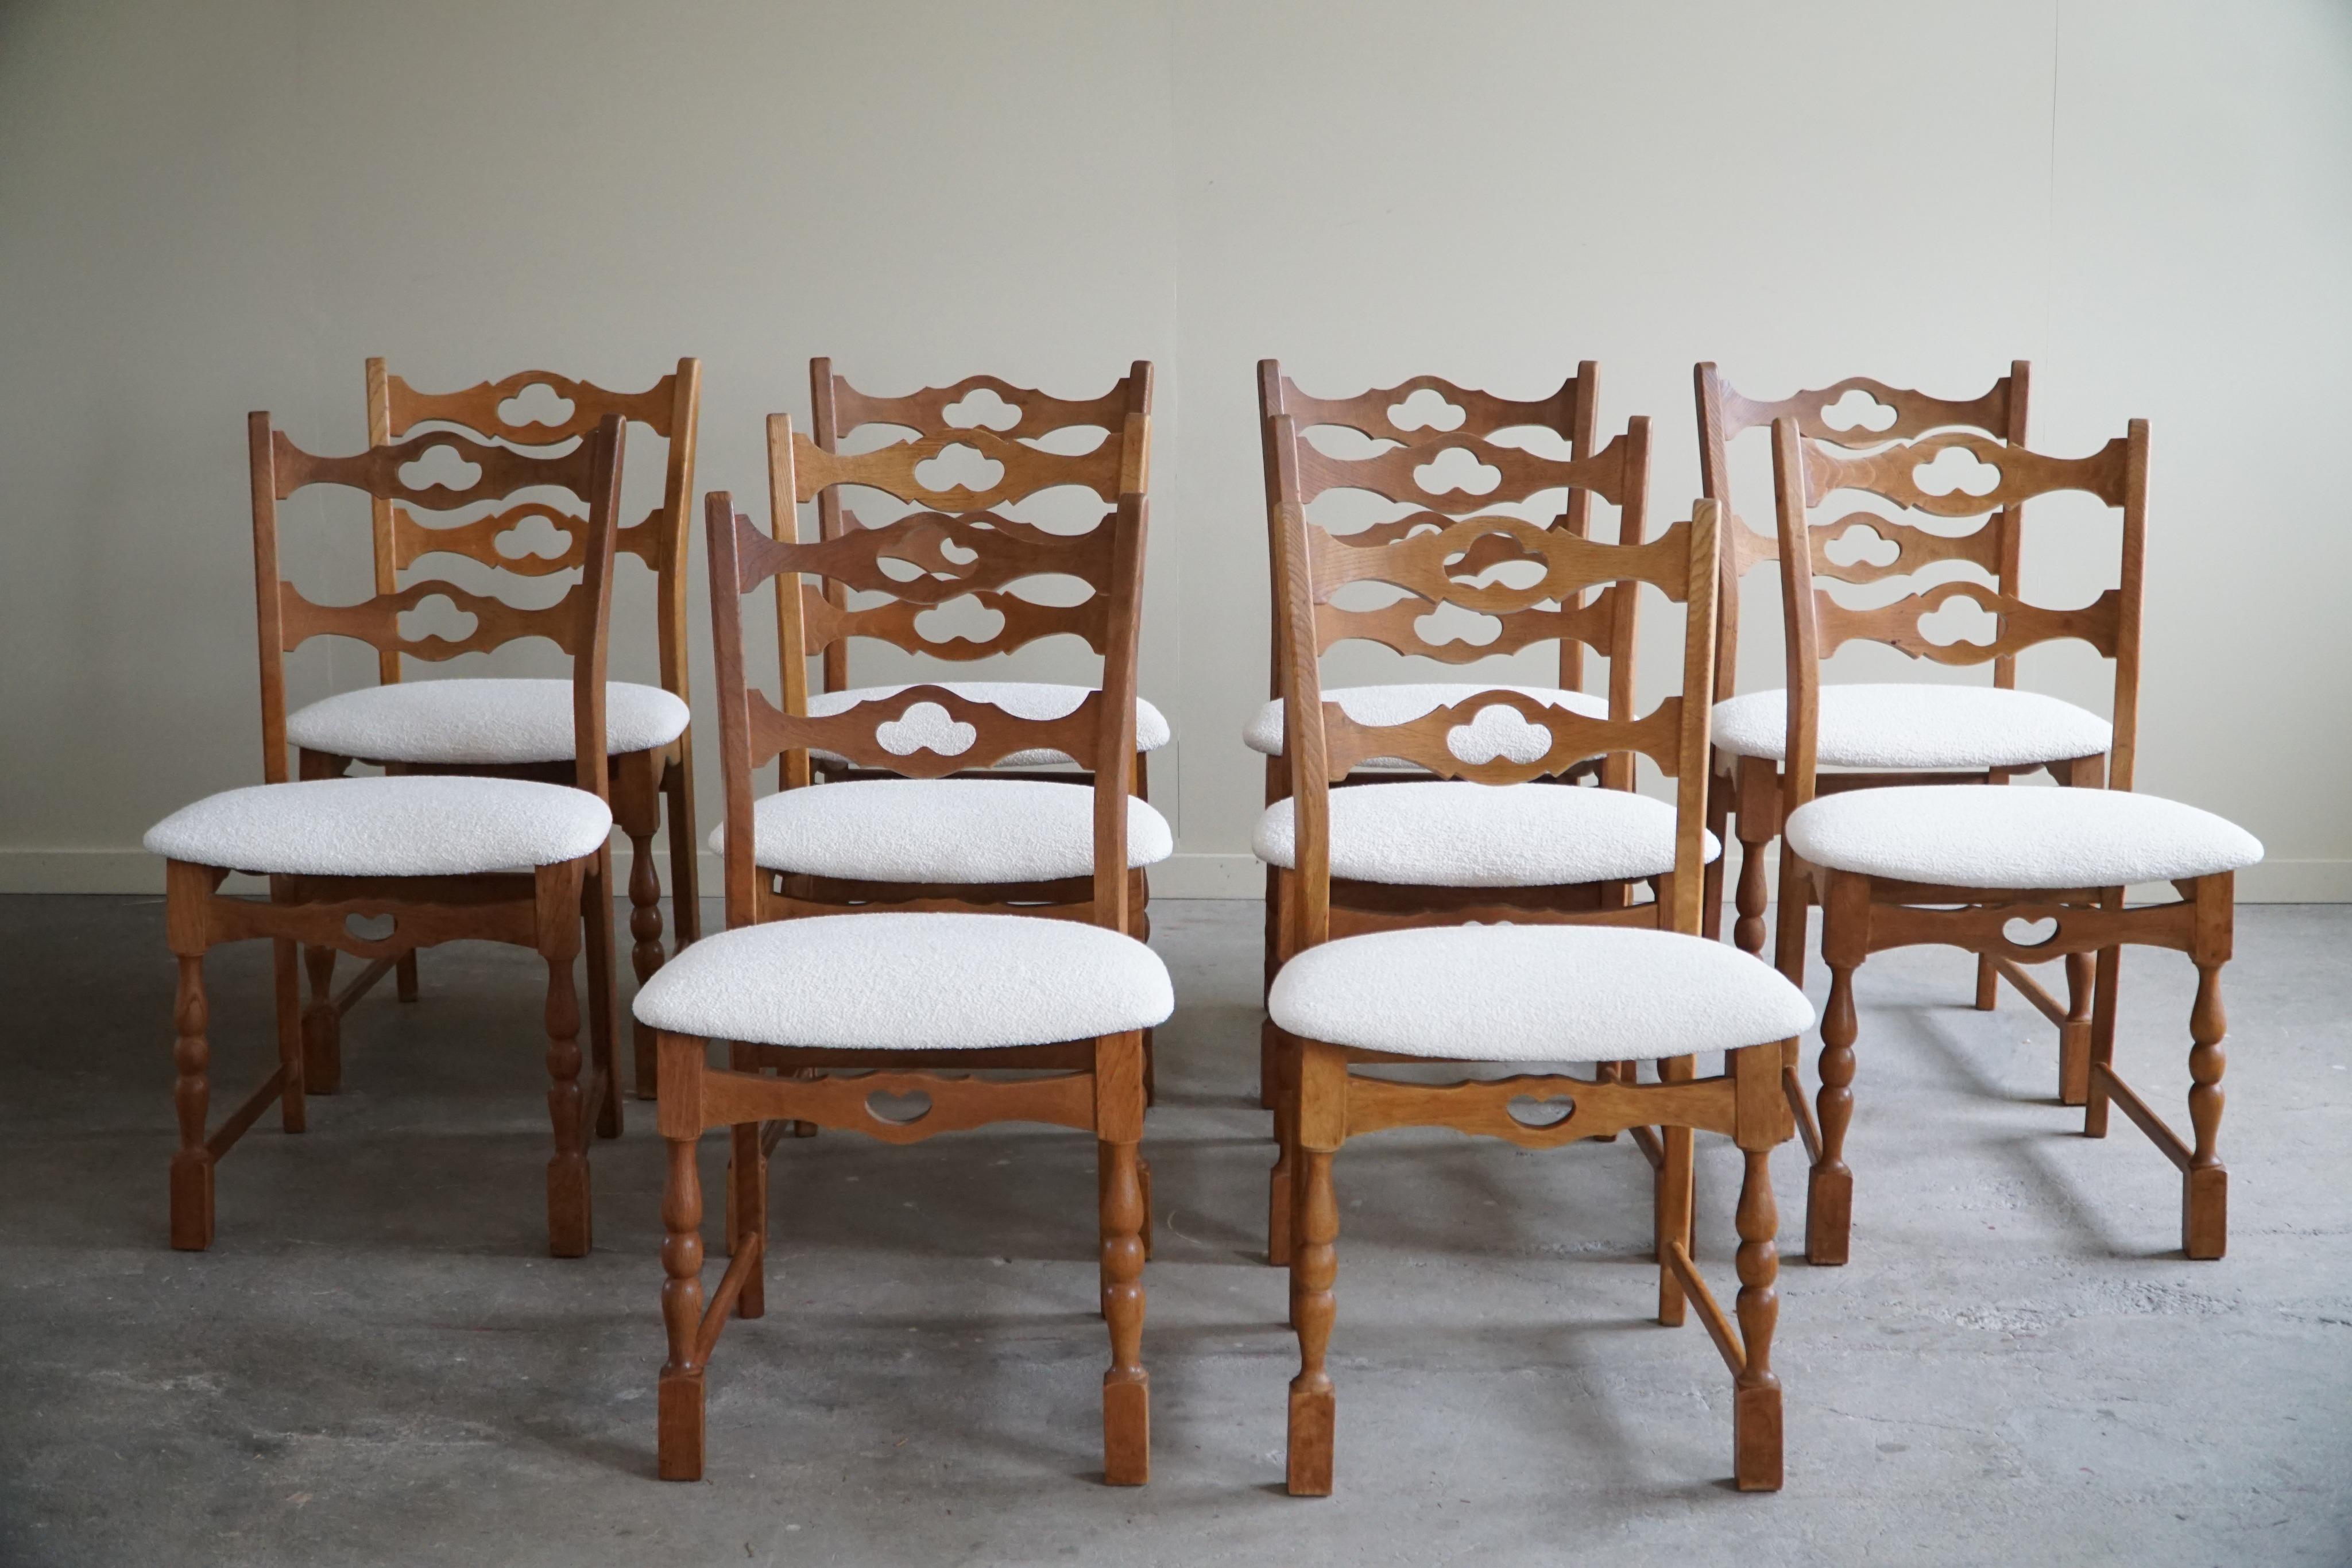 Ein skulpturales, klassisches Set von 10 Esszimmerstühlen aus Eichenholz, Sitze neu gepolstert mit weißem Bouclé. 
Henning (Henry) Kjærnulf zugeschrieben für E.G. Møbler - ca. 1960er Jahre.

Der Gesamteindruck dieser Mid-Century-Stühle ist wirklich